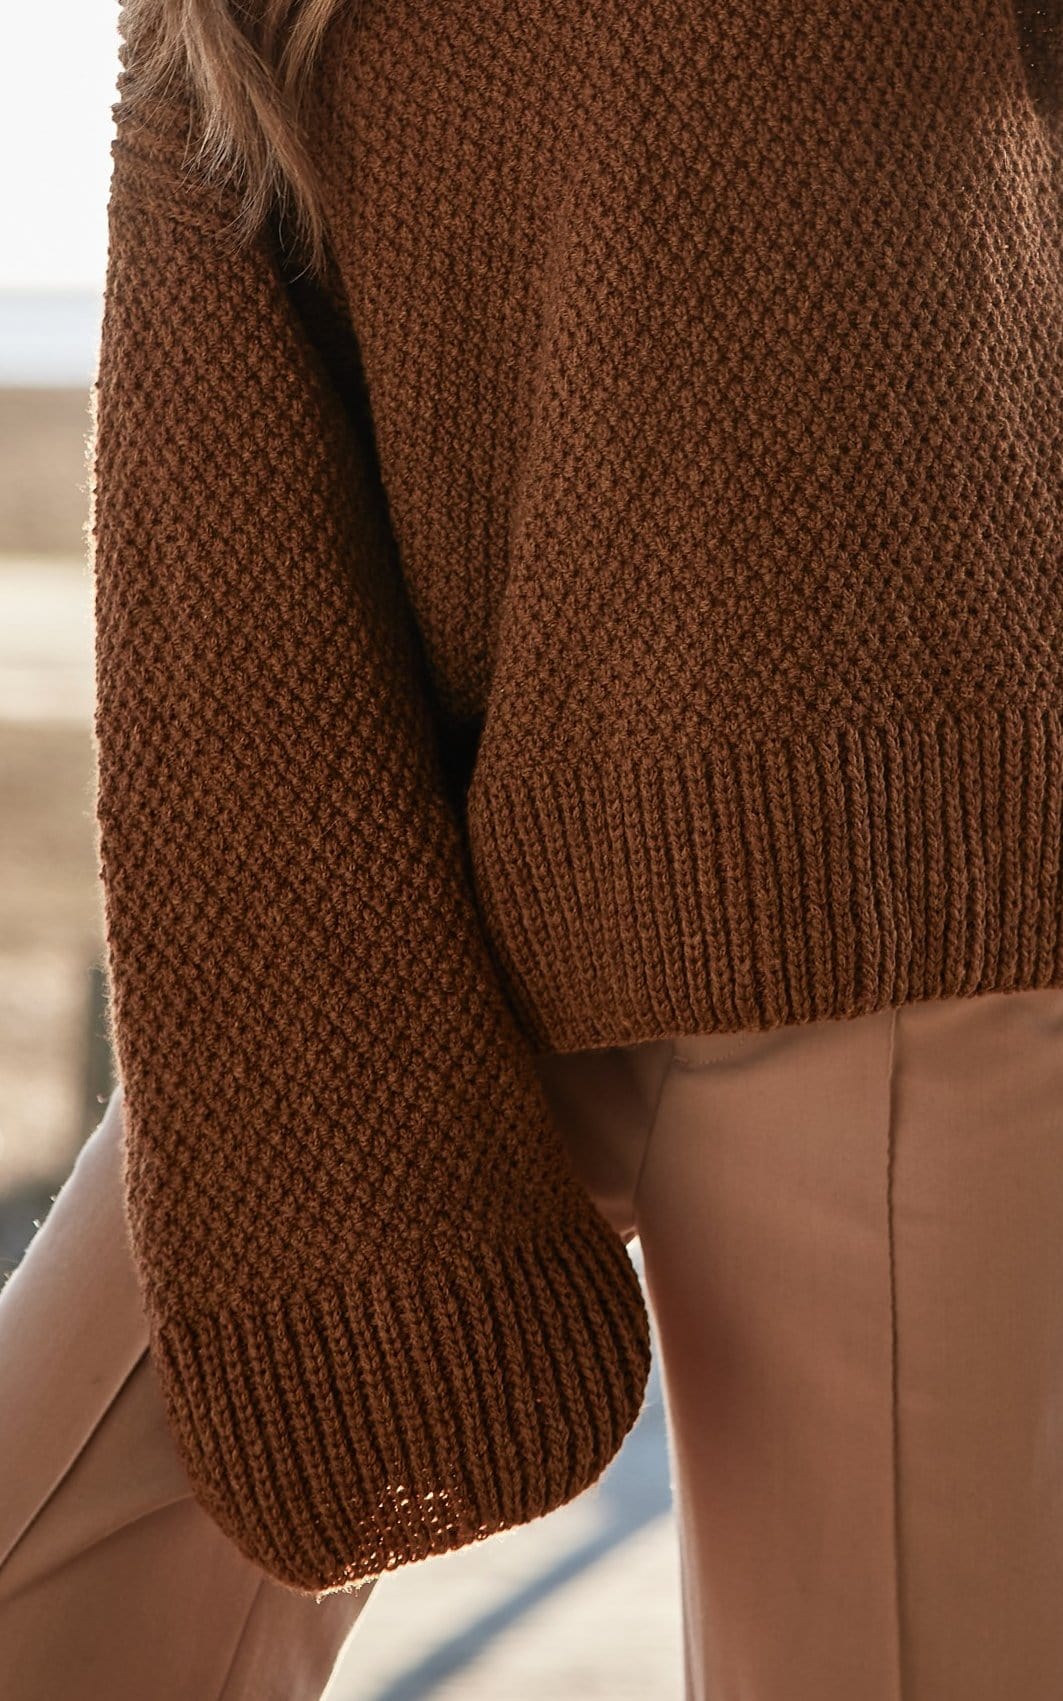 Pullover - COOL MERINO - Strickset von LANA GROSSA jetzt online kaufen bei OONIQUE